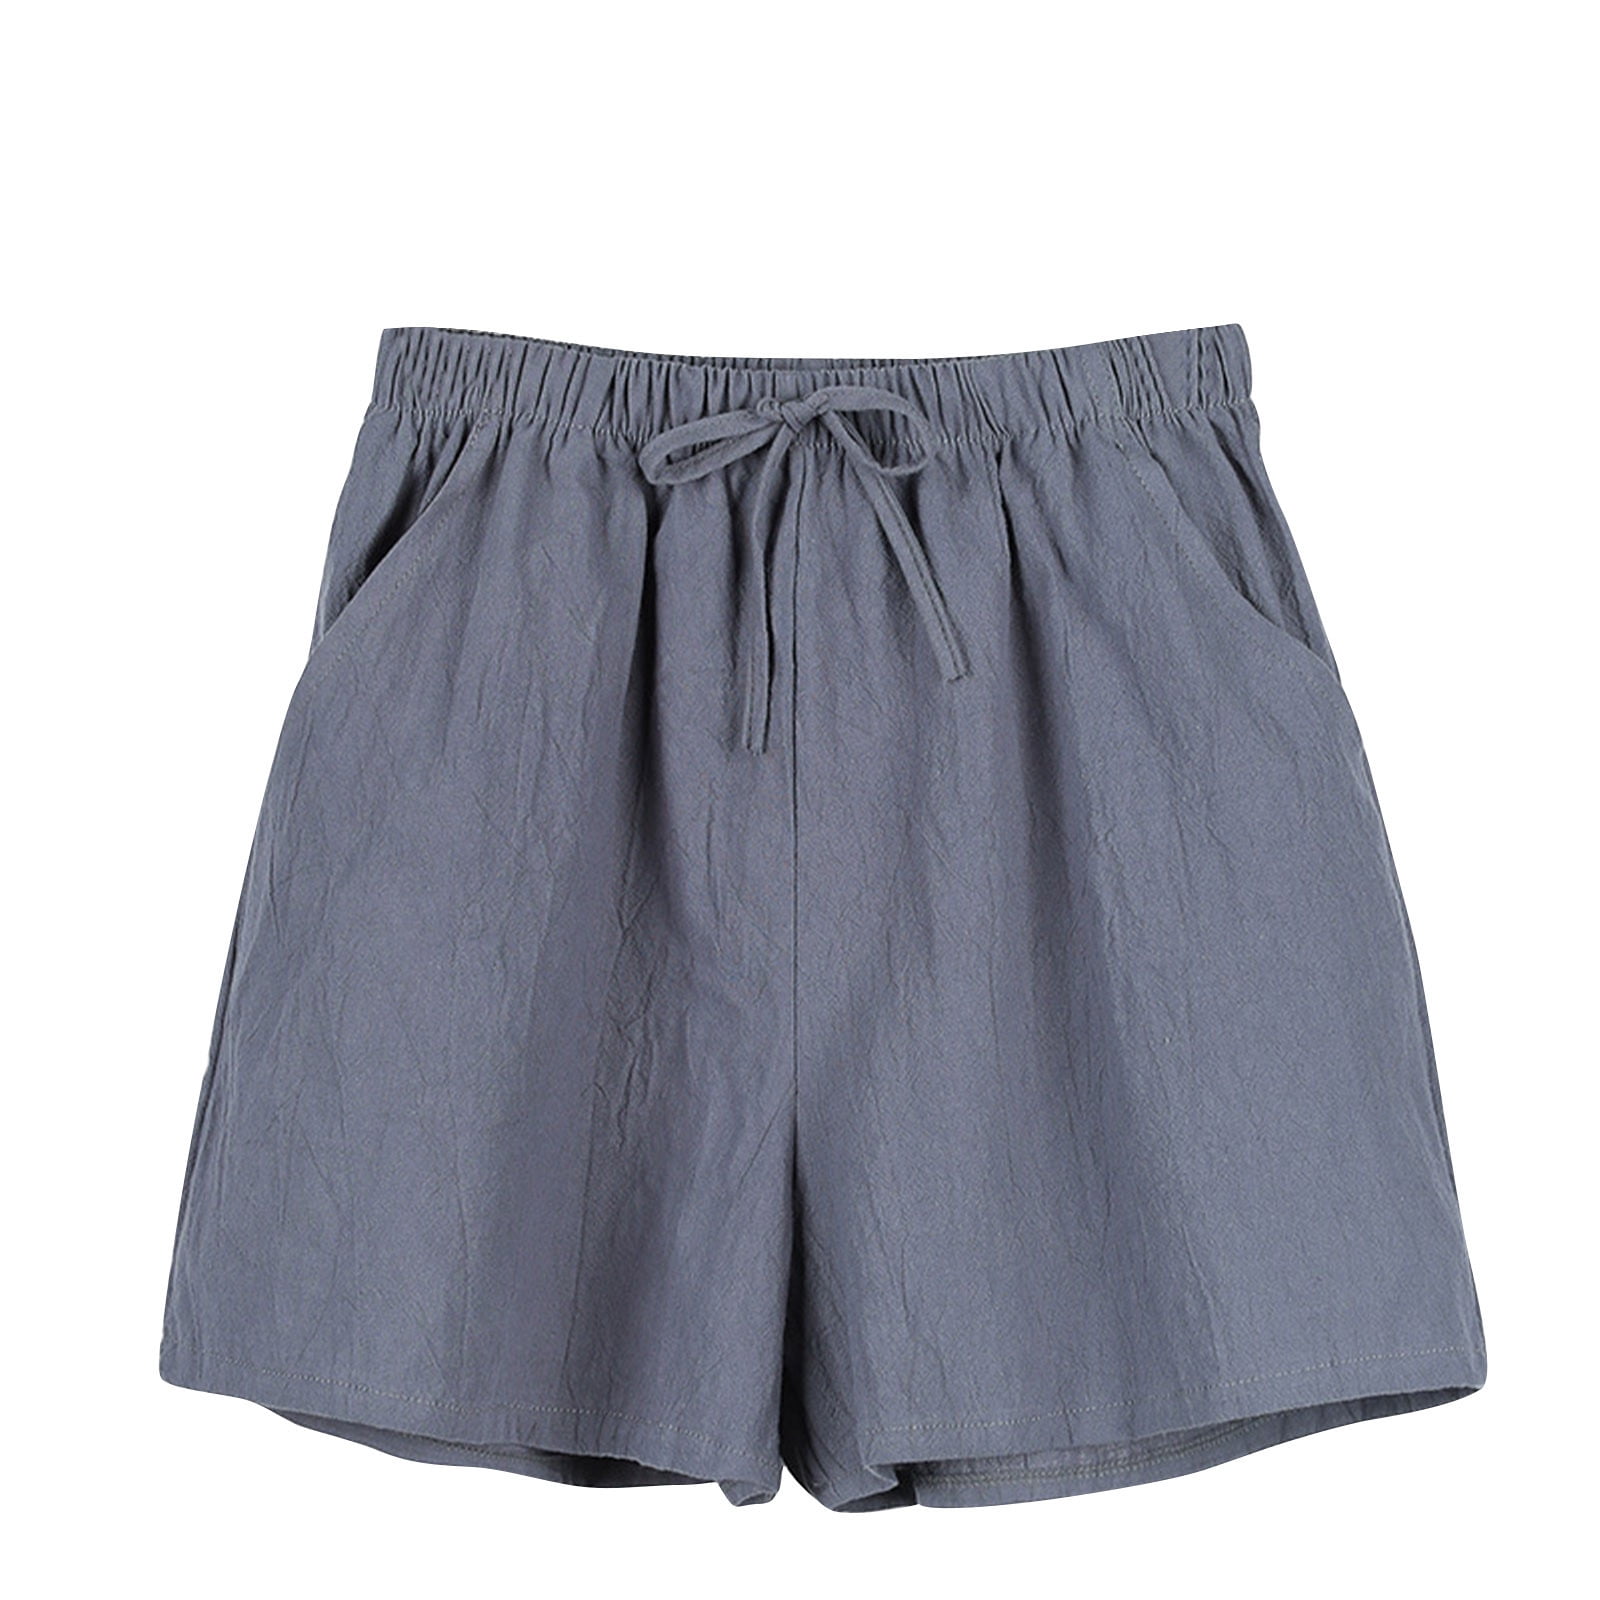 Annhoo Summer Cotton Linen Shorts for Women High Waist Drawstring Wide ...